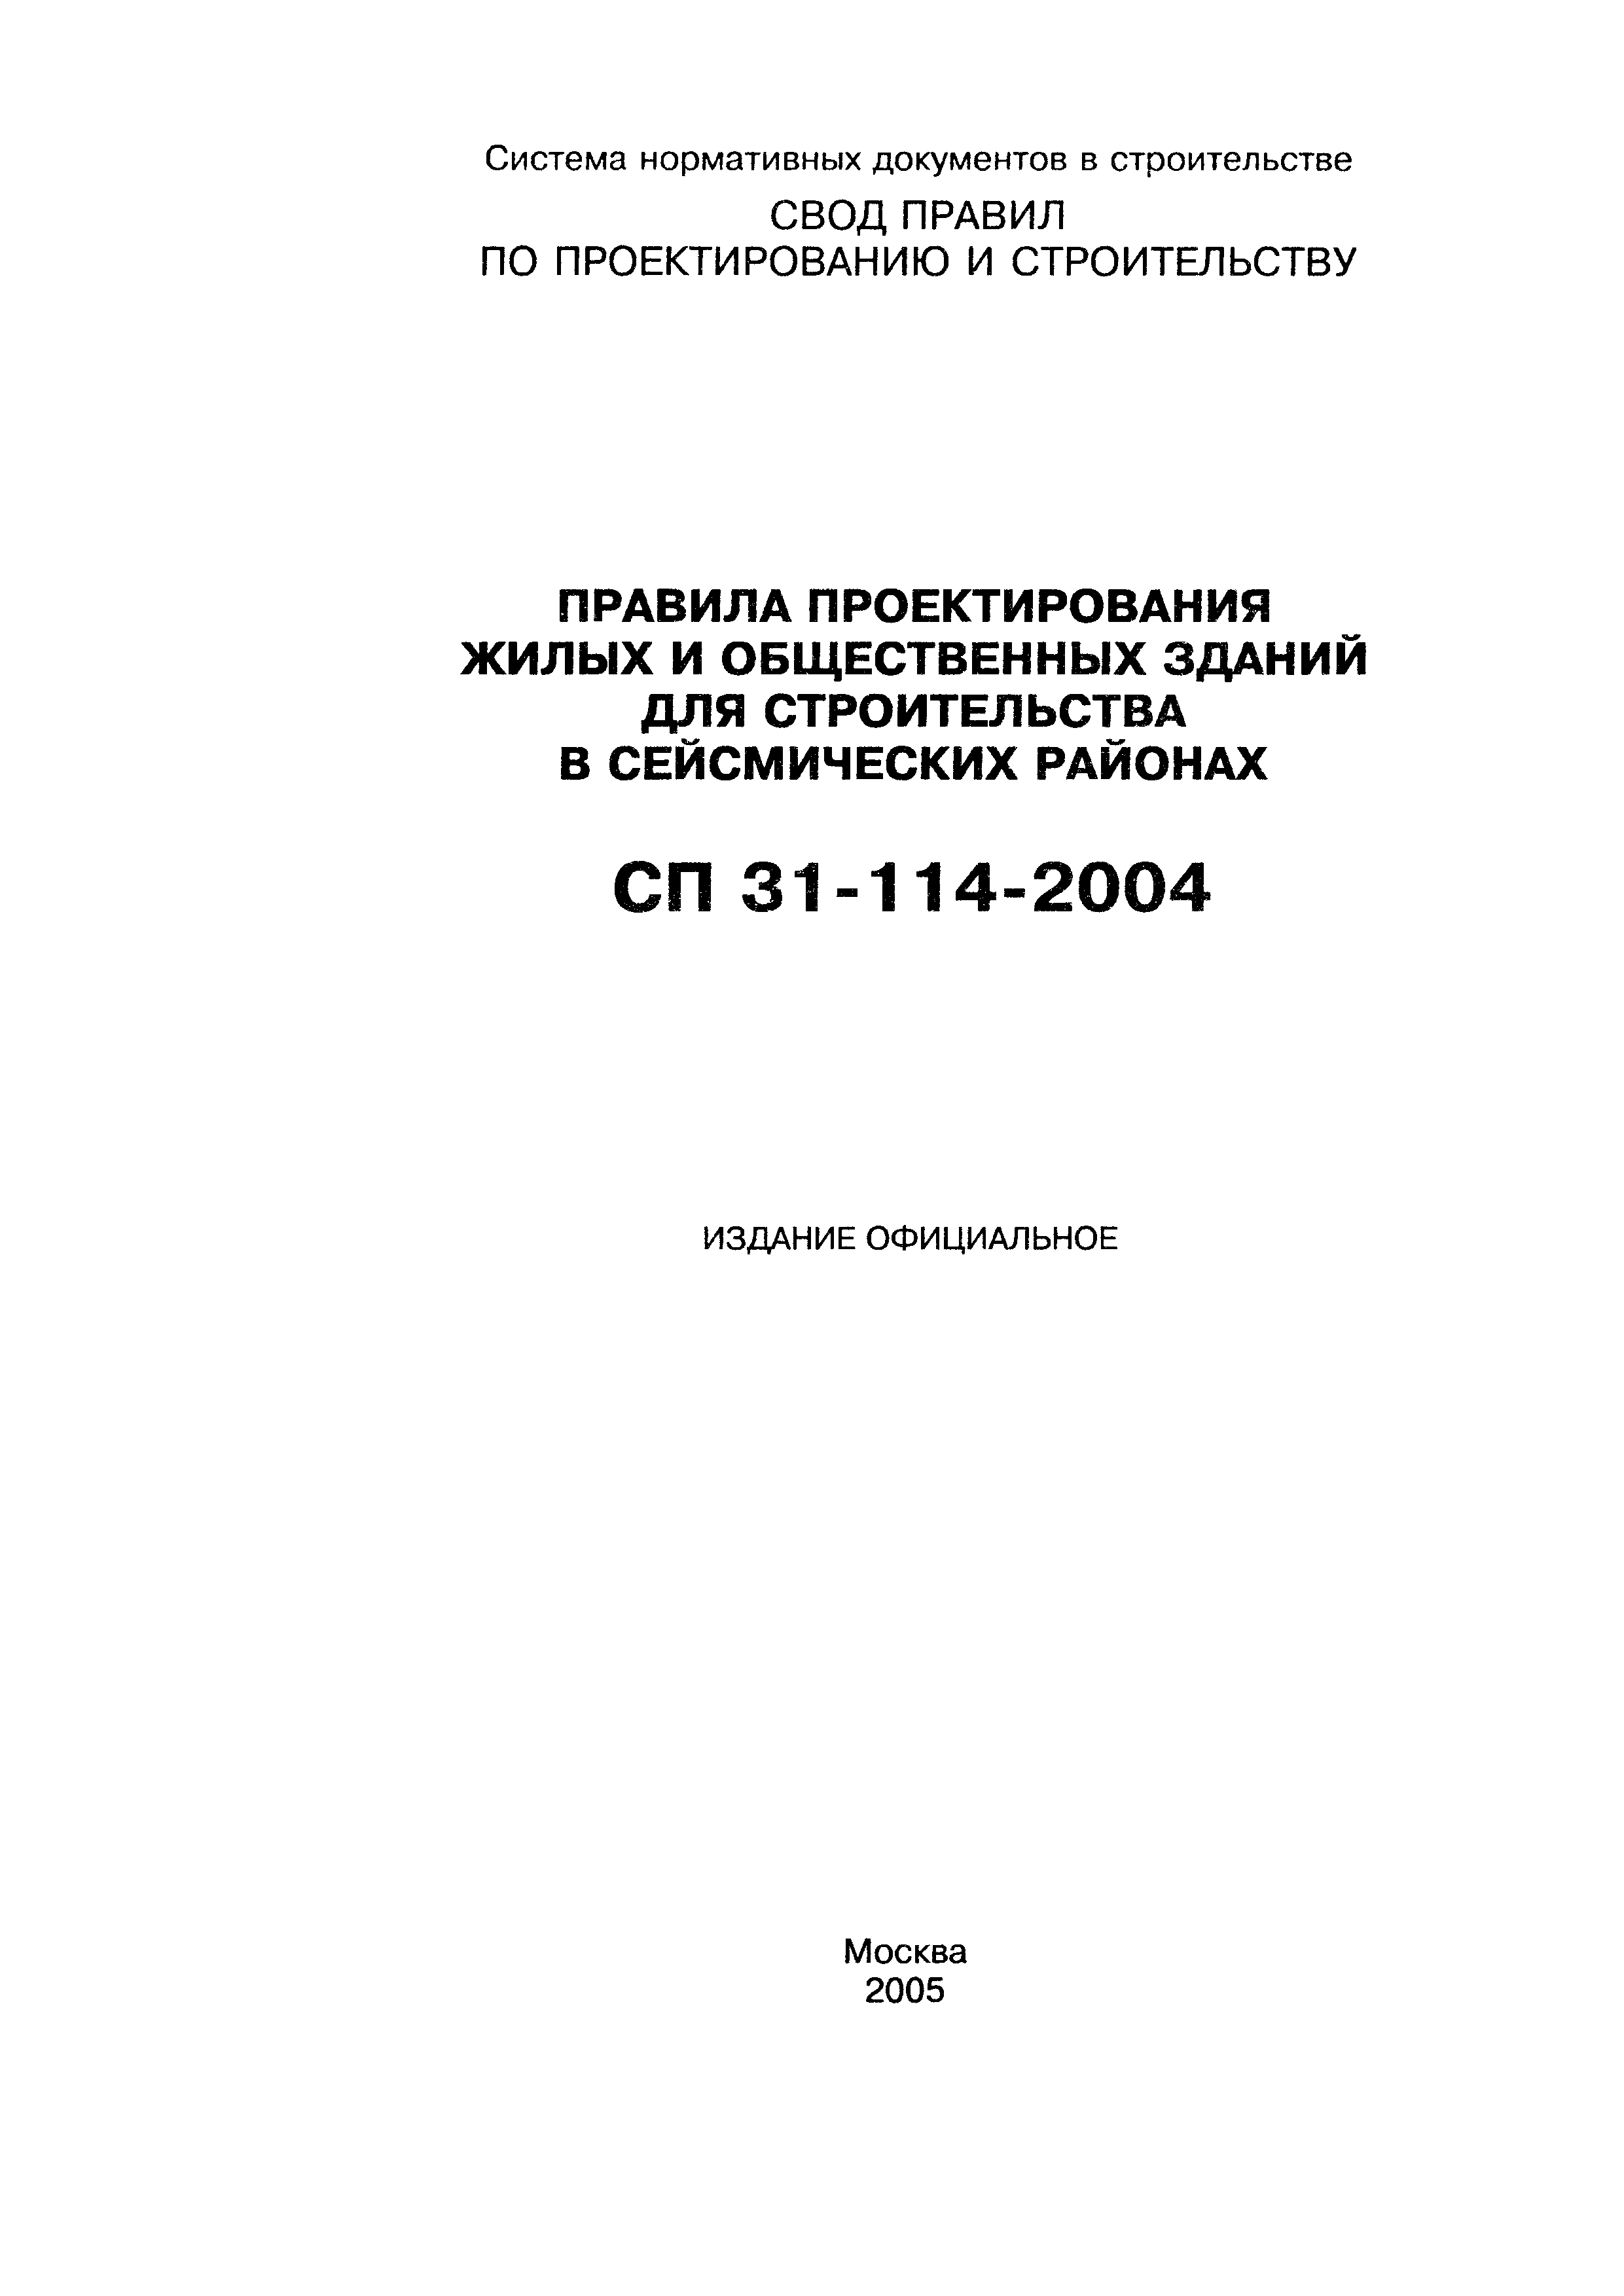 СП 31-114-2004